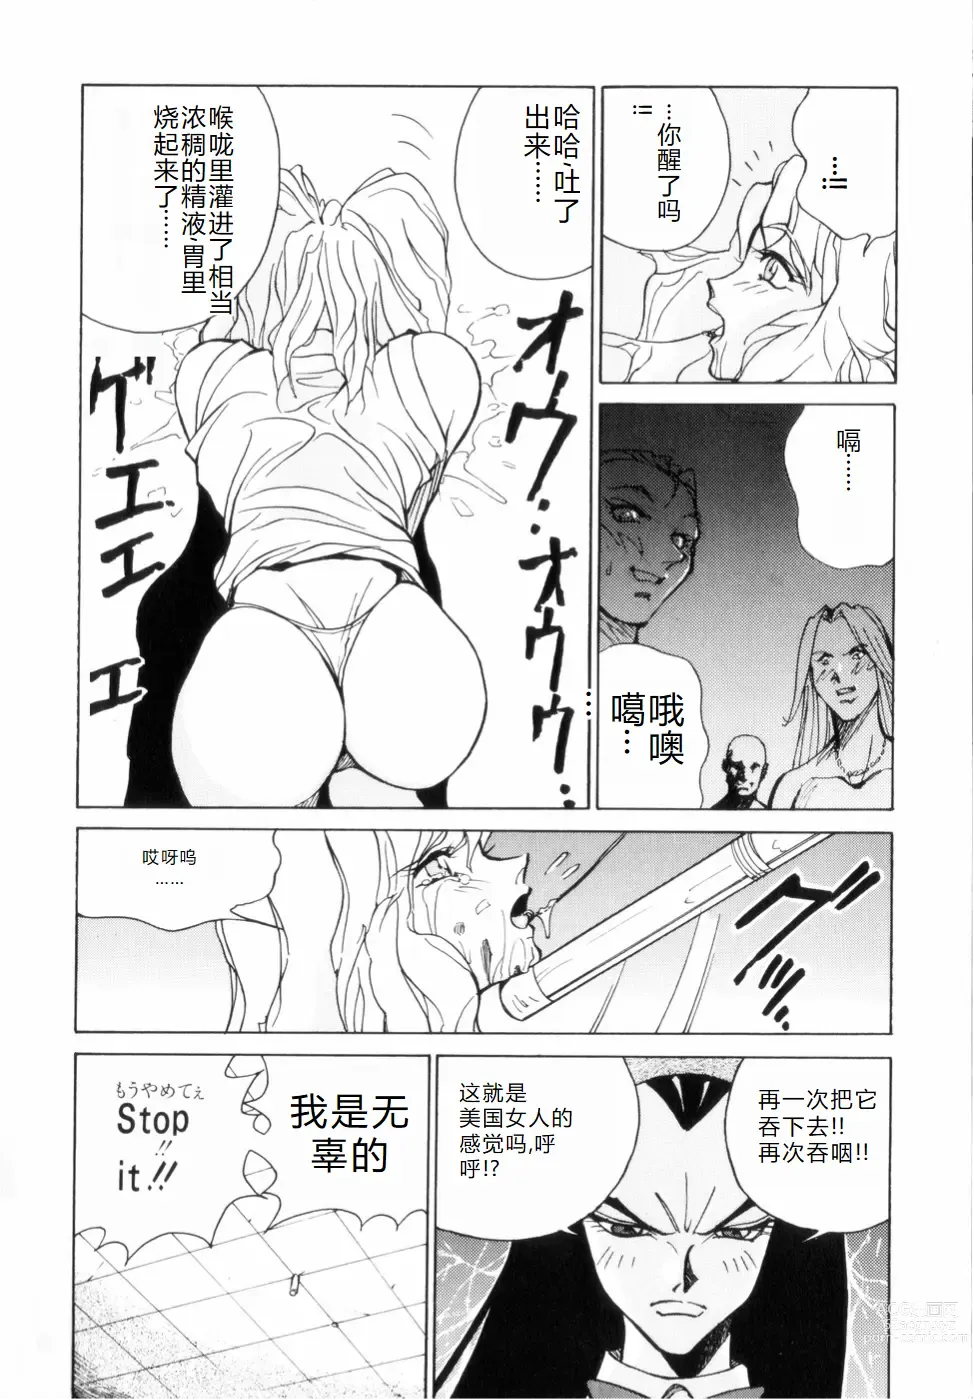 Page 148 of manga Hakujuu no Hasha